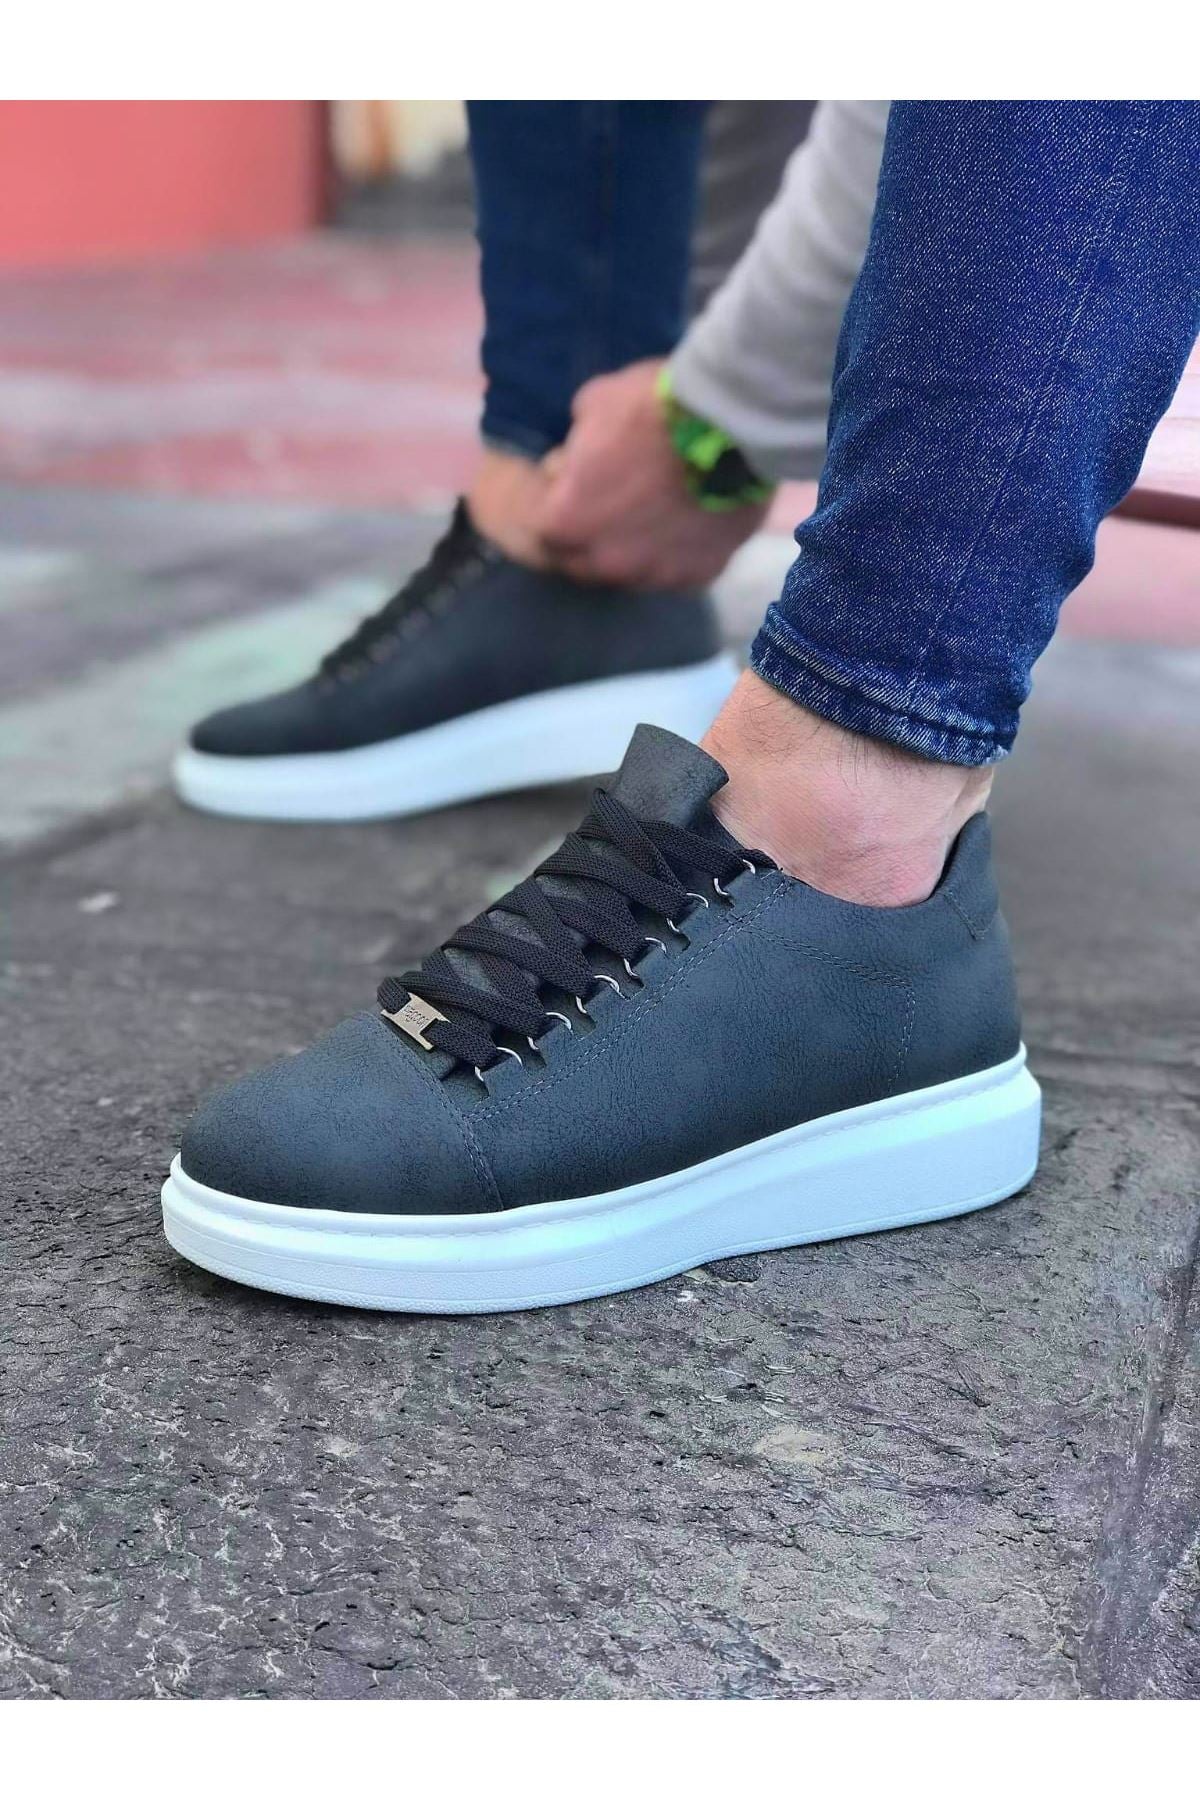 WG08 Gray Flat Men's Casual Shoes - STREETMODE™ DE